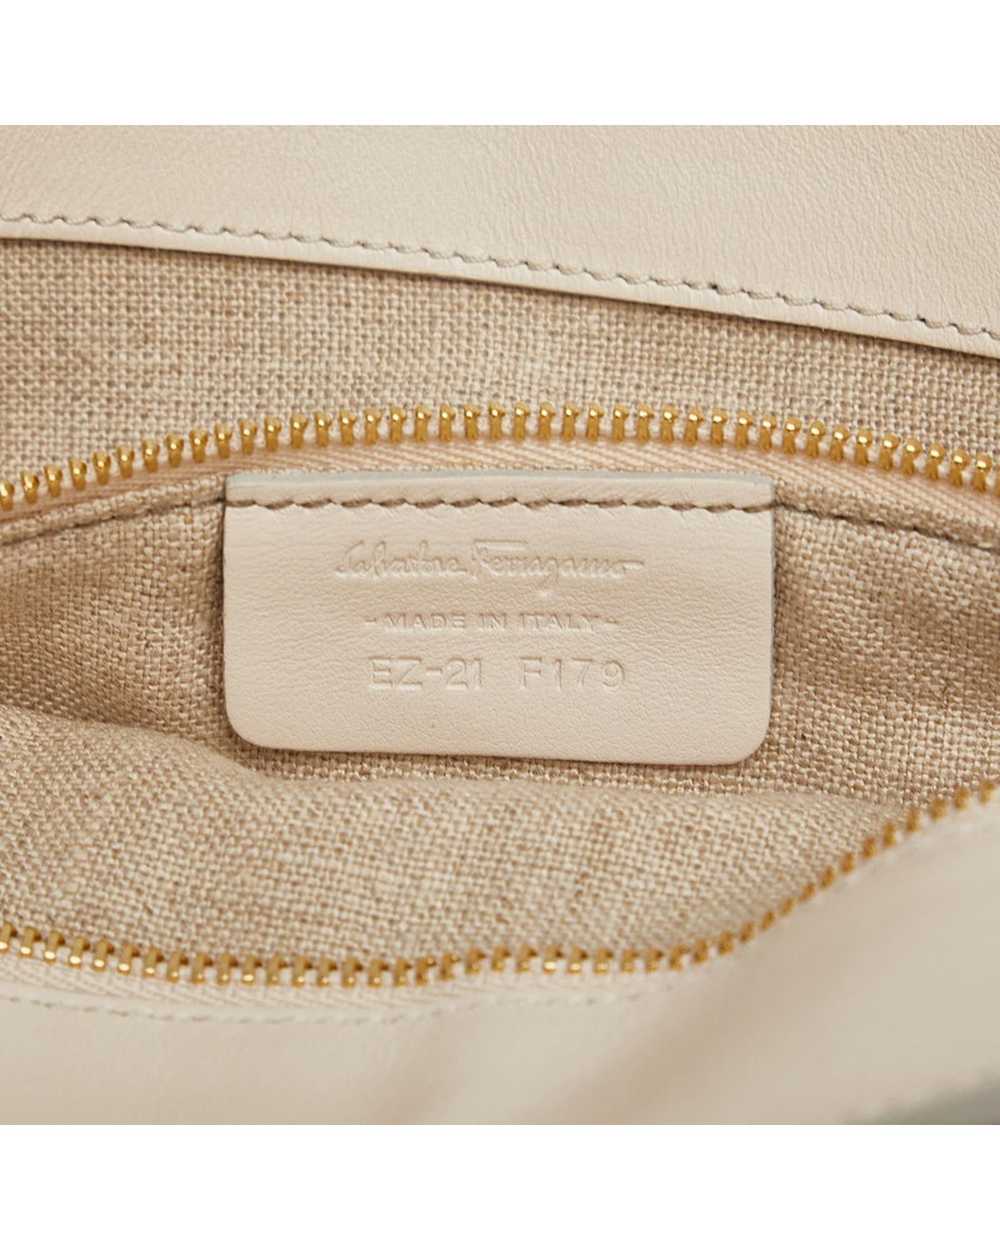 Salvatore Ferragamo Leather Chain Shoulder Bag in… - image 8